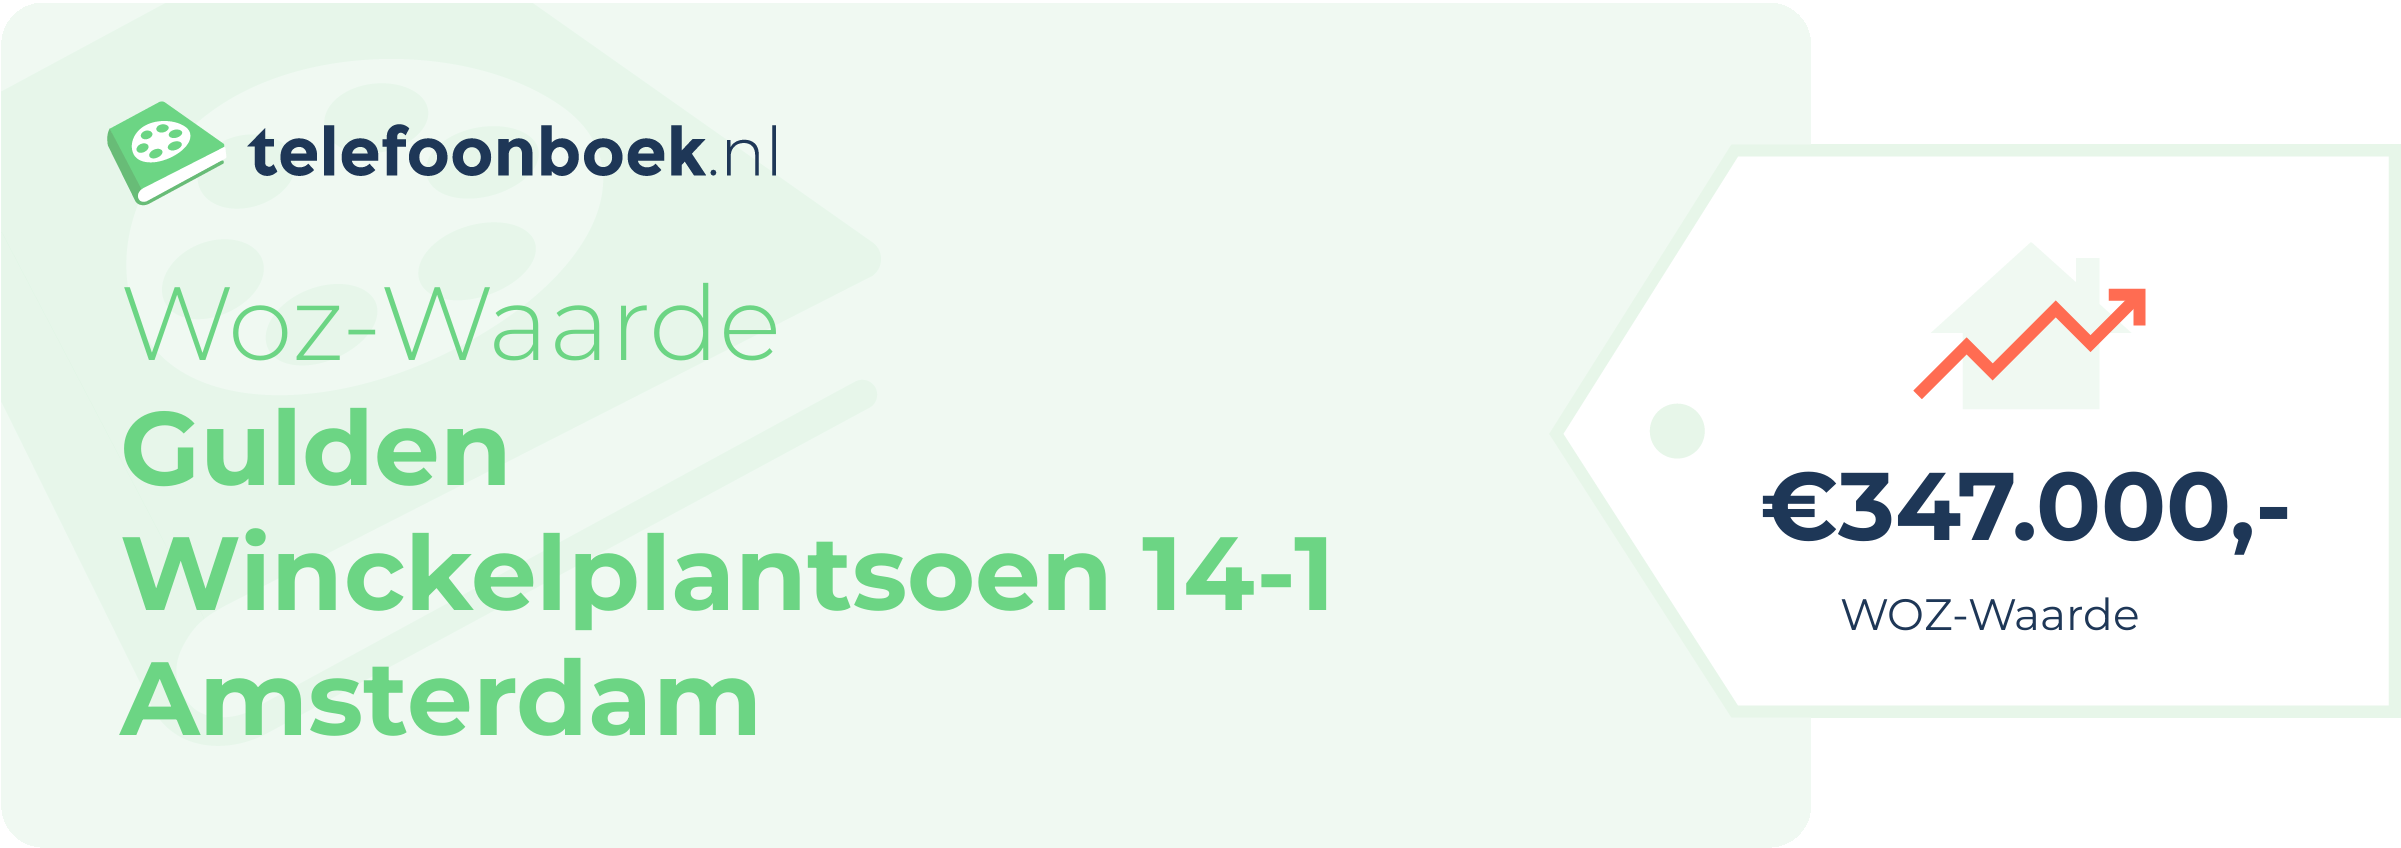 WOZ-waarde Gulden Winckelplantsoen 14-1 Amsterdam